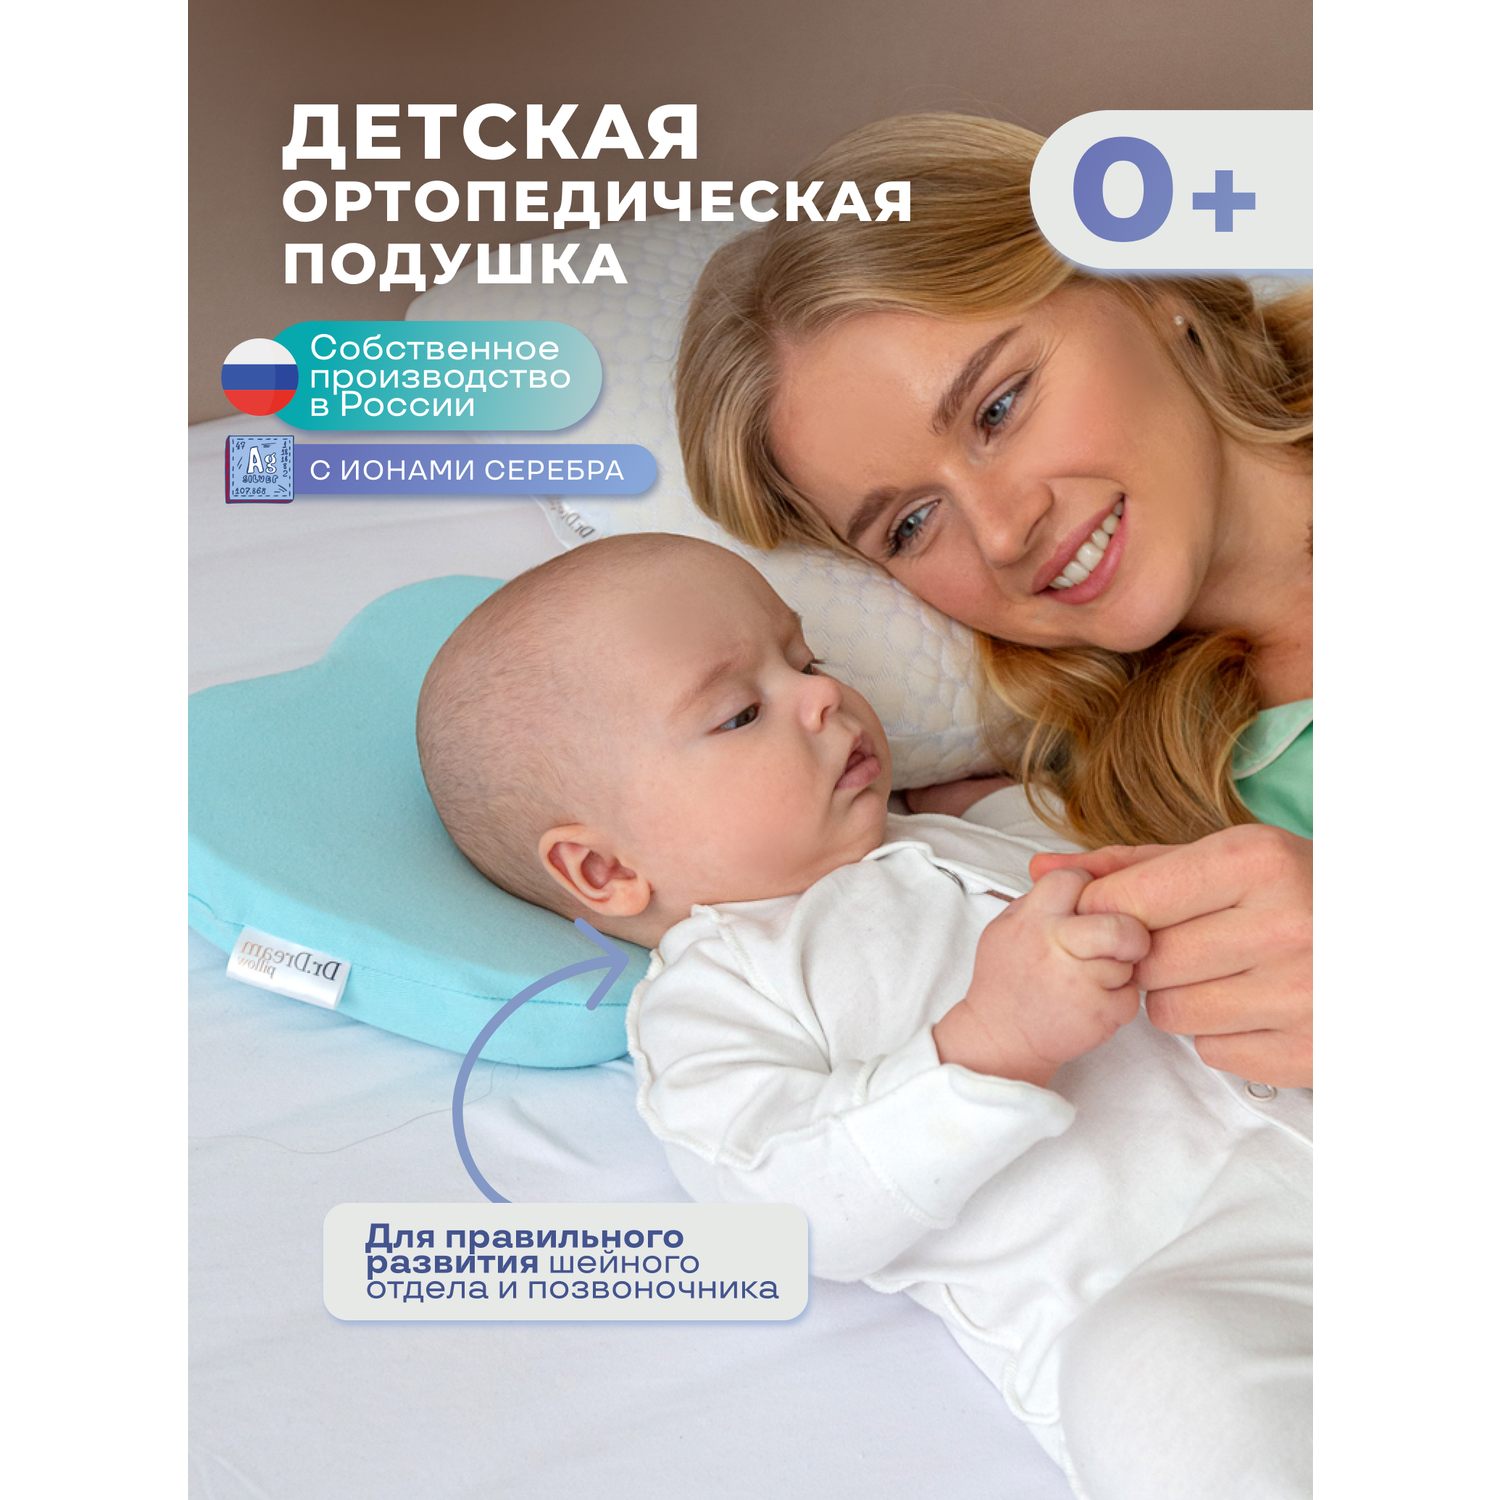 Подушка для новорожденных Dr. Dream анатомическая - фото 2